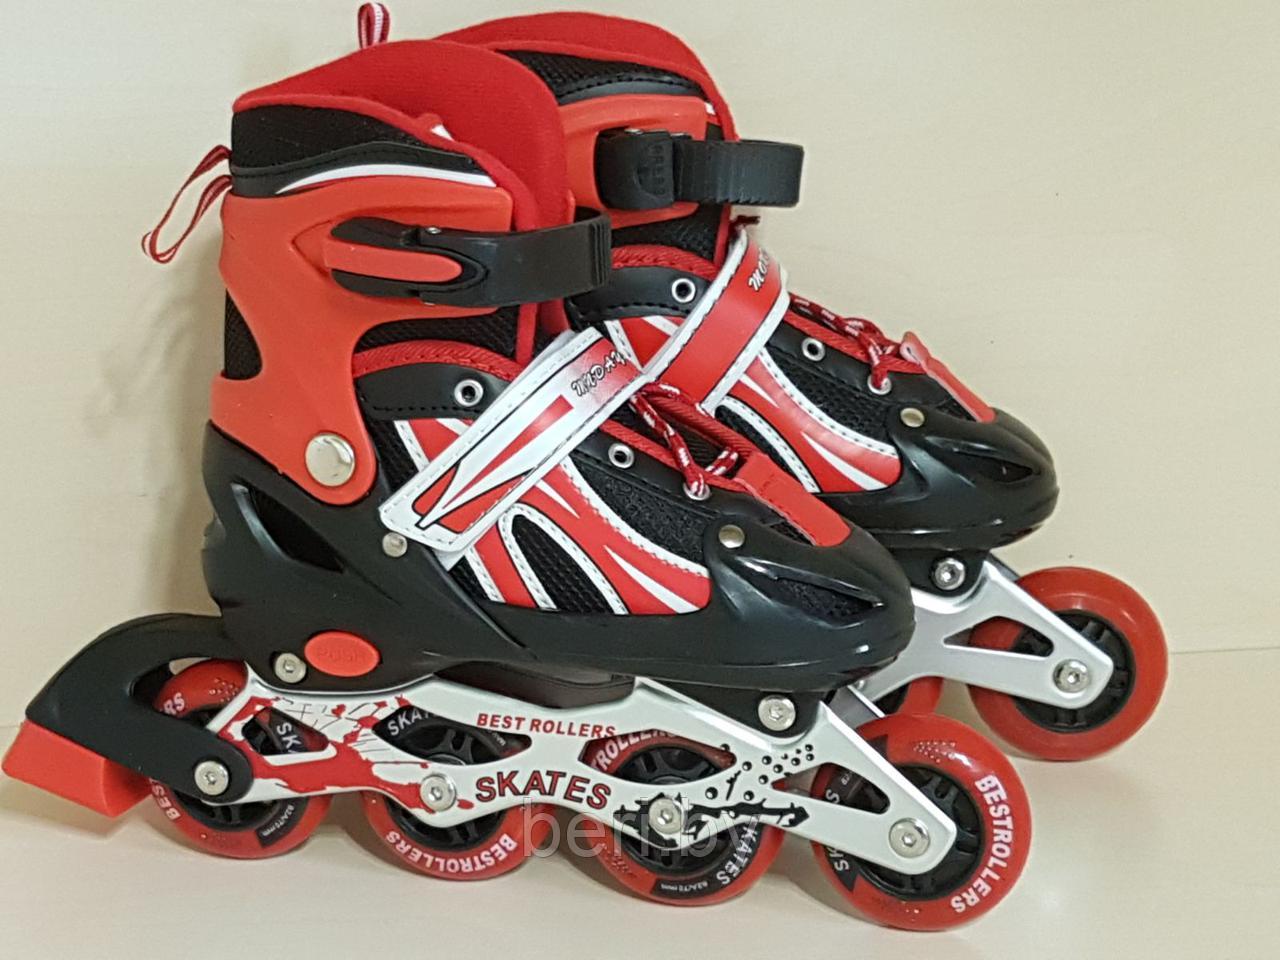 Ролики, роликовые коньки детские раздвижные S размер 29-33, полиуретановые колеса, красные